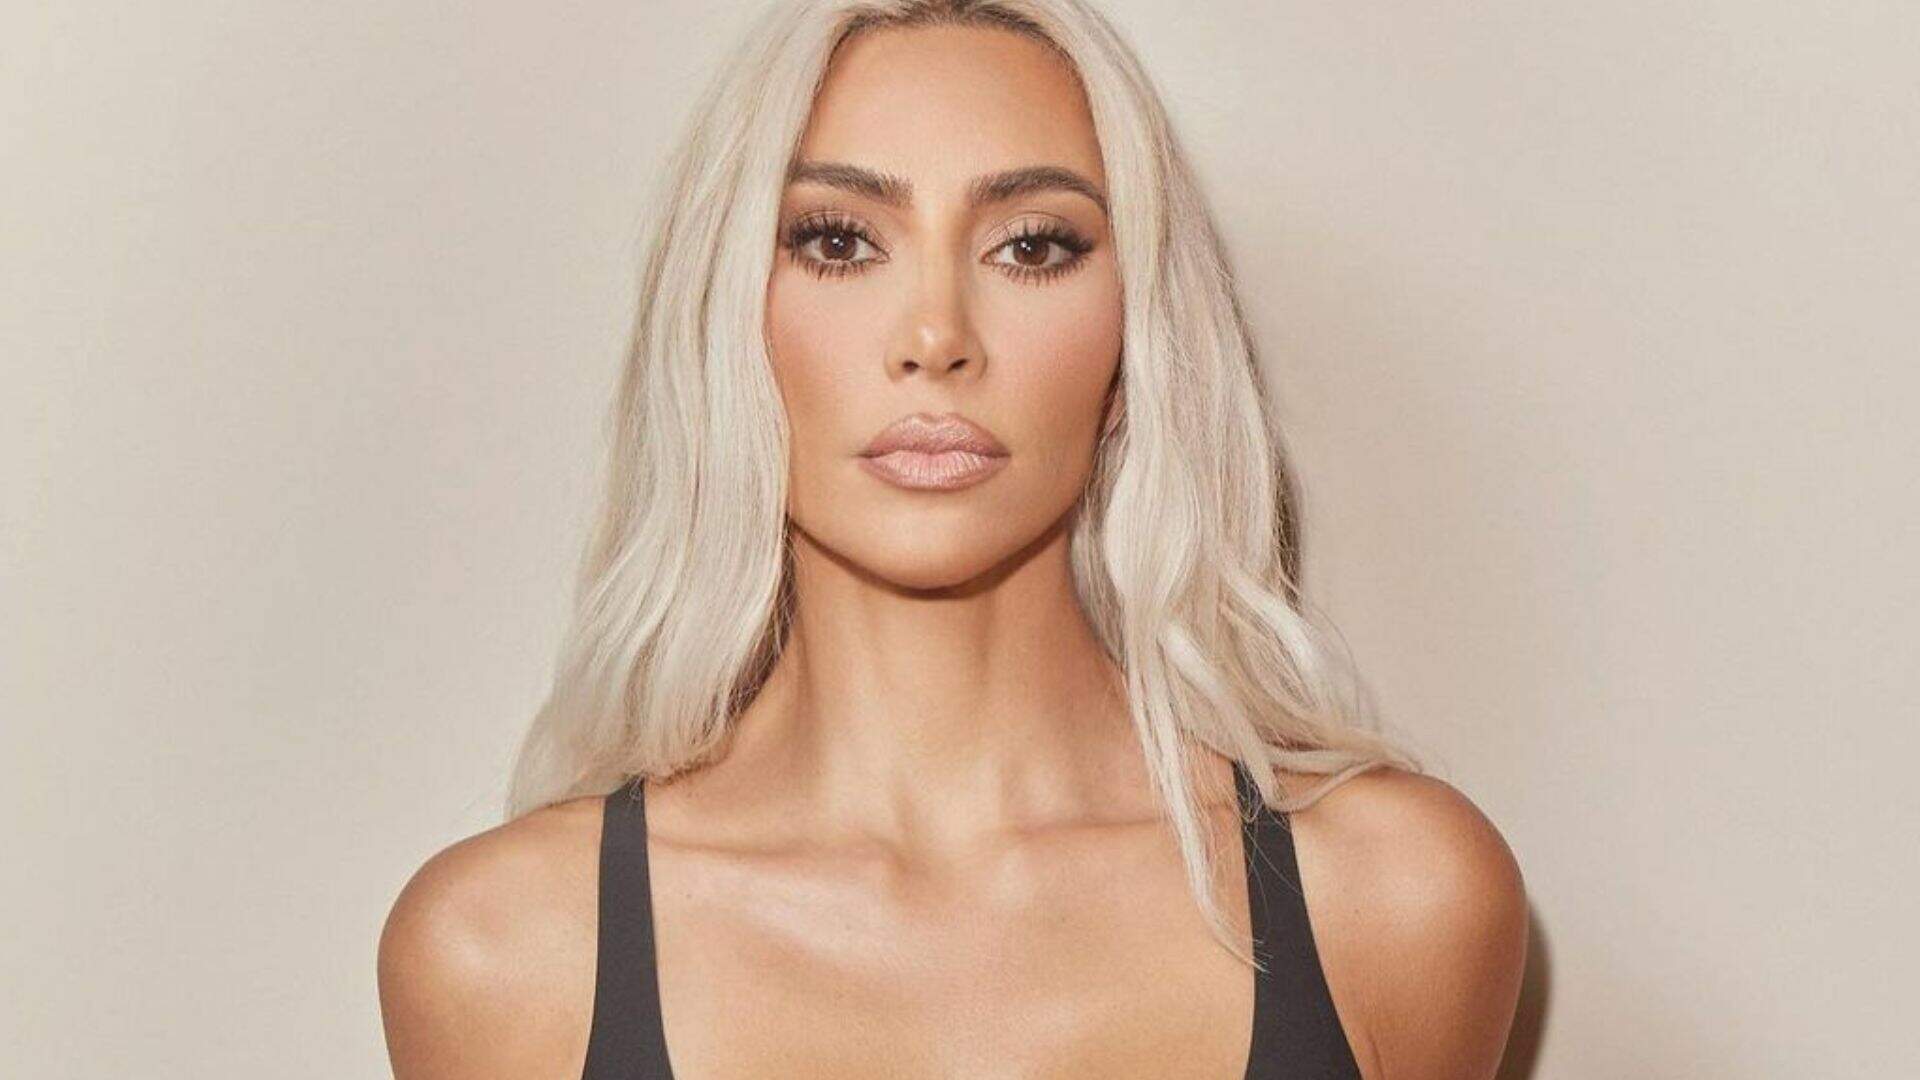 Kim Kardashian revela a verdade sobre look polêmico que virou chacota: “As pessoas me destruíram” - Metropolitana FM